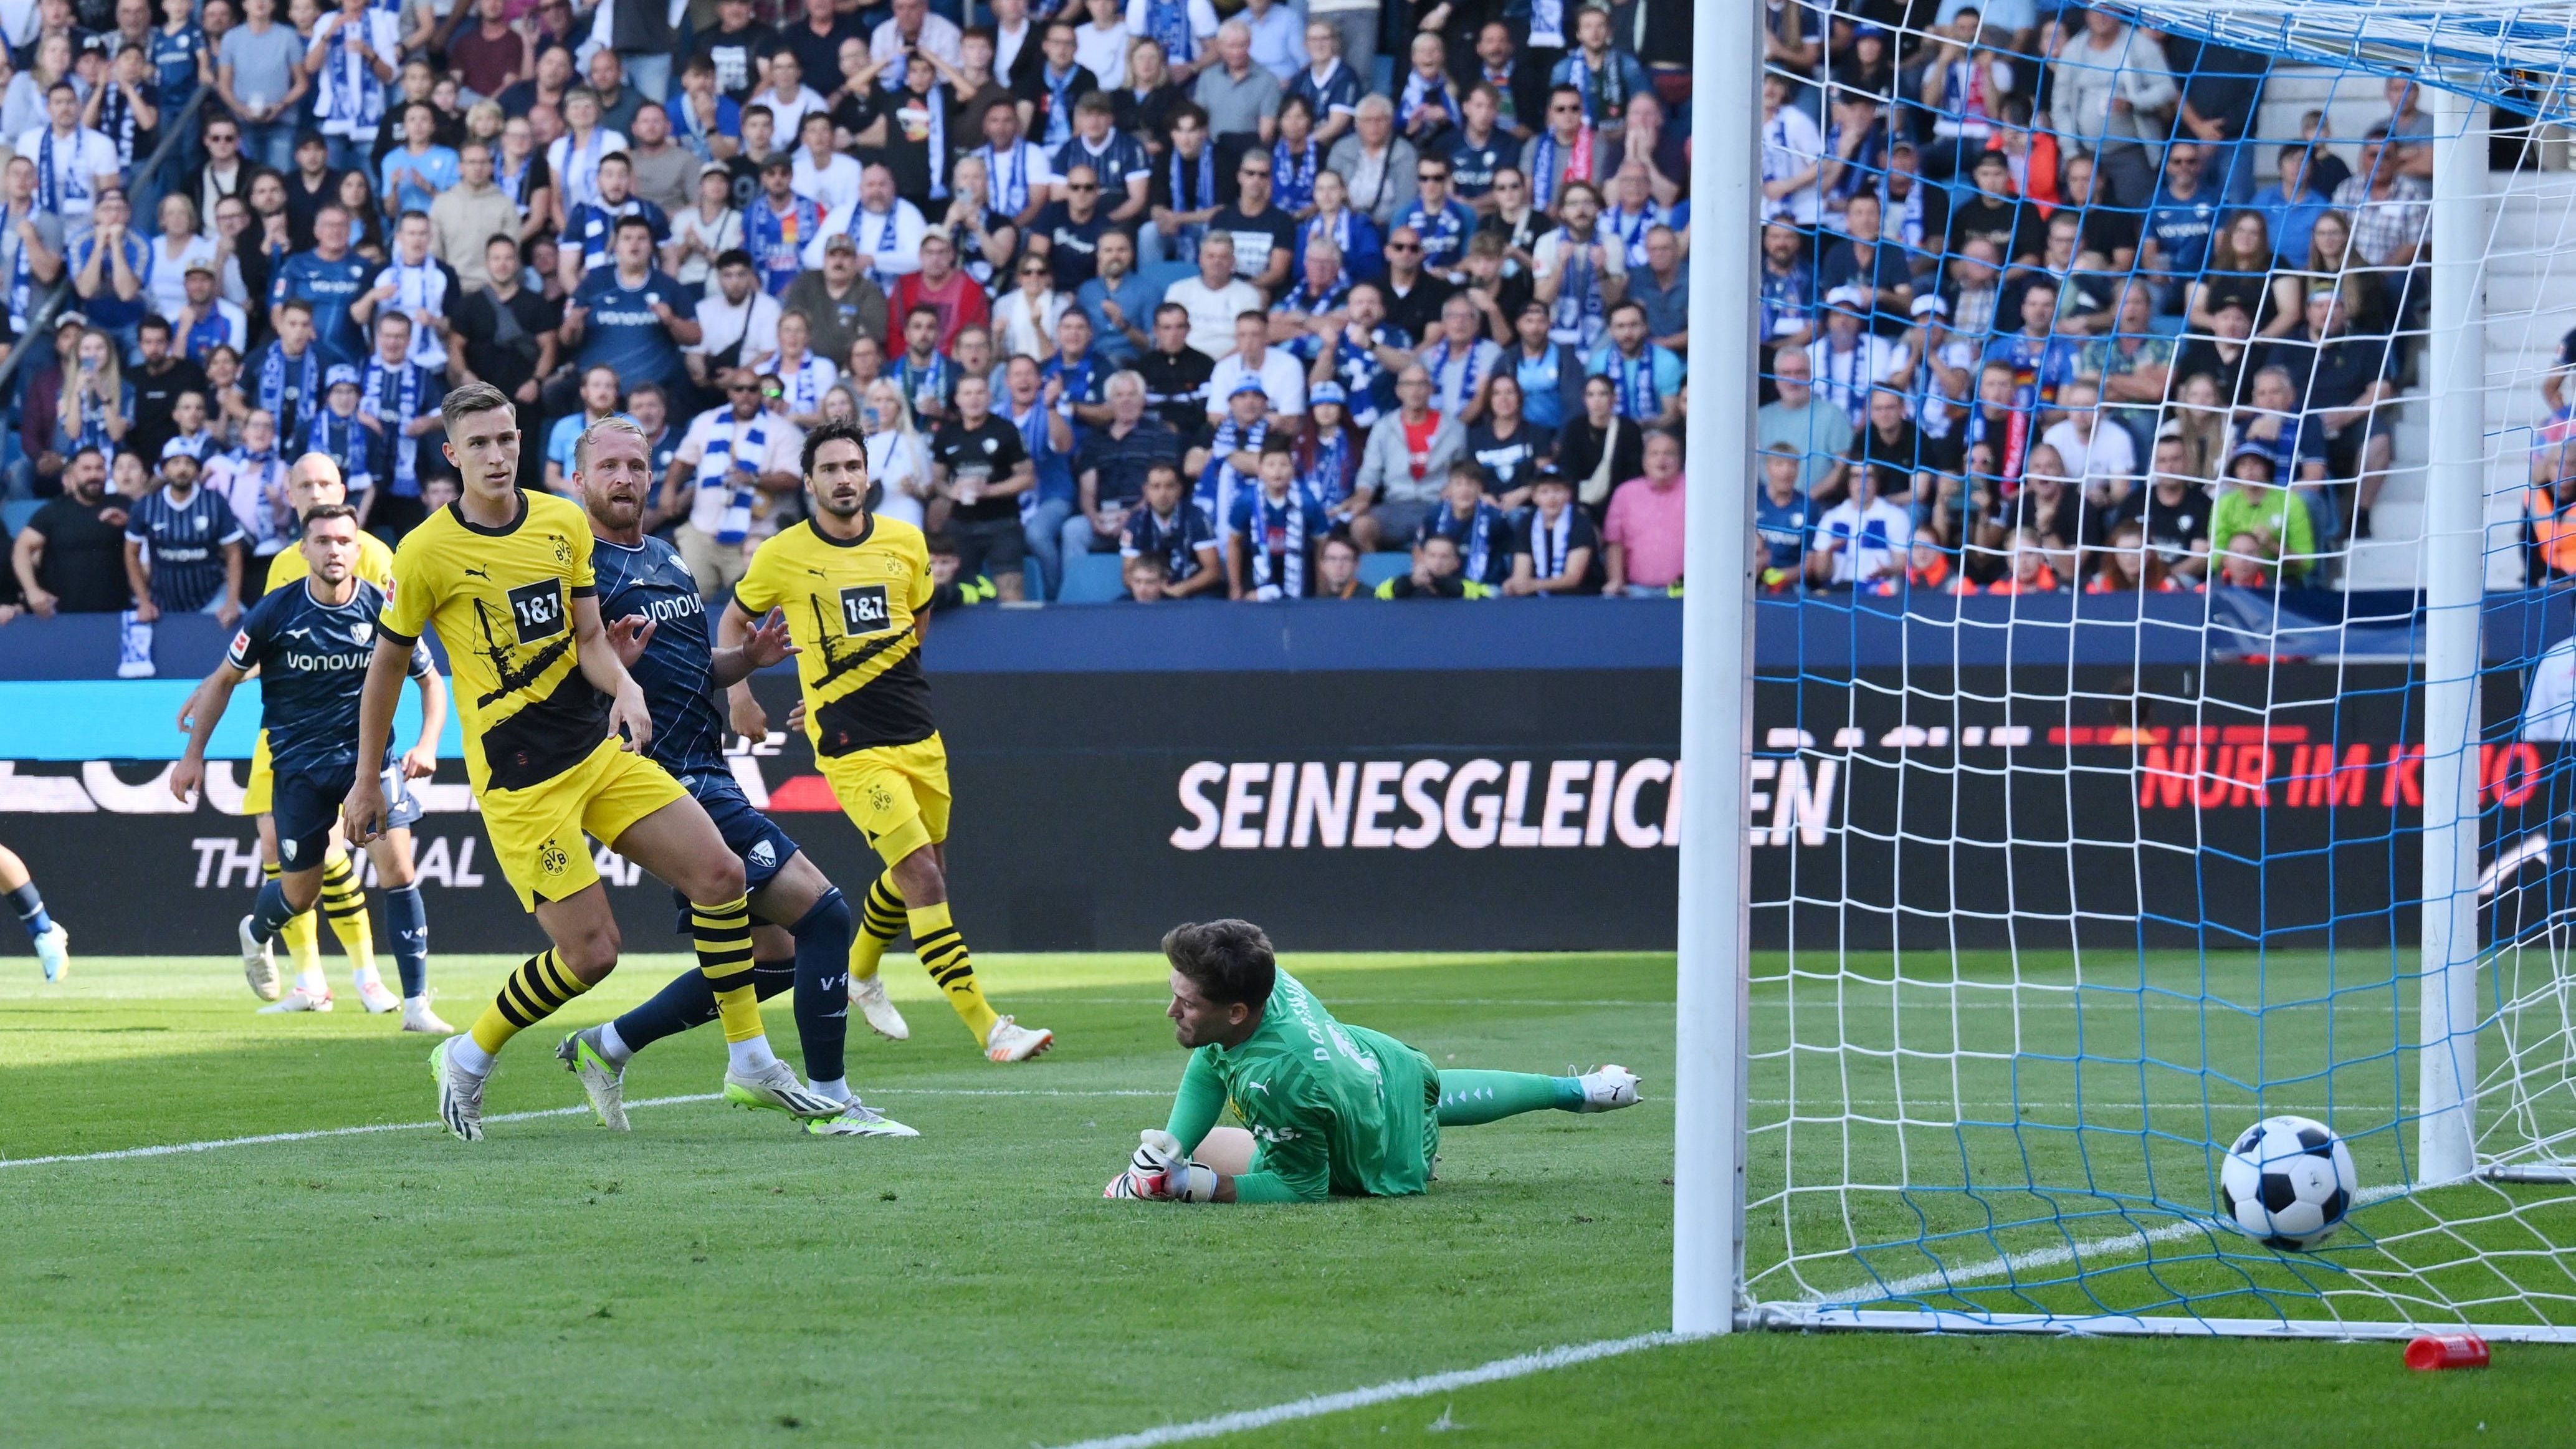 <strong>2. Spieltag: Zum 129. Mal in Folge kein 0:0 bei BVB-Spiel</strong><br>Borussia Dortmund hat im kleinen Revierderby in Bochum schon mit dem ersten Gegentreffer einen neuen Bundesliga-Rekord aufgestellt. Damit spielt der BVB zum 129. Mal in Folge in der Bundesliga eine Begegnung, in der mindestens ein Treffer fällt. Zuvor teilten sich BVB und Schalke den Rekord mit jeweils 128 Partien in Folge mit mindestens einem Treffer. (Quelle: optafranz/twitter)